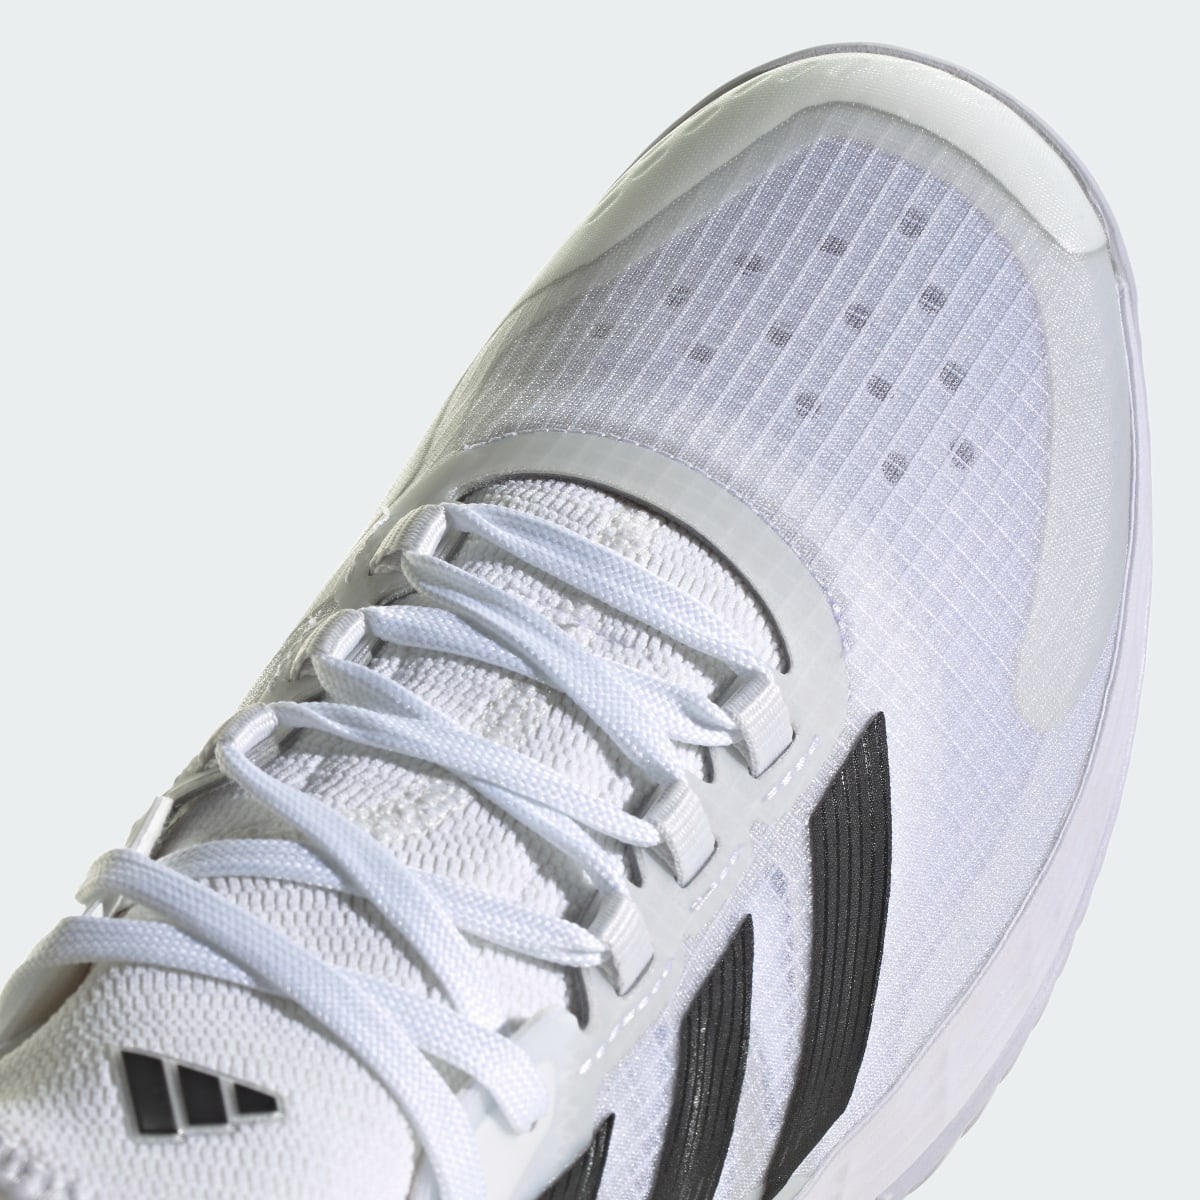 Adidas Adizero Ubersonic 4.1 Tennis Shoes. 9